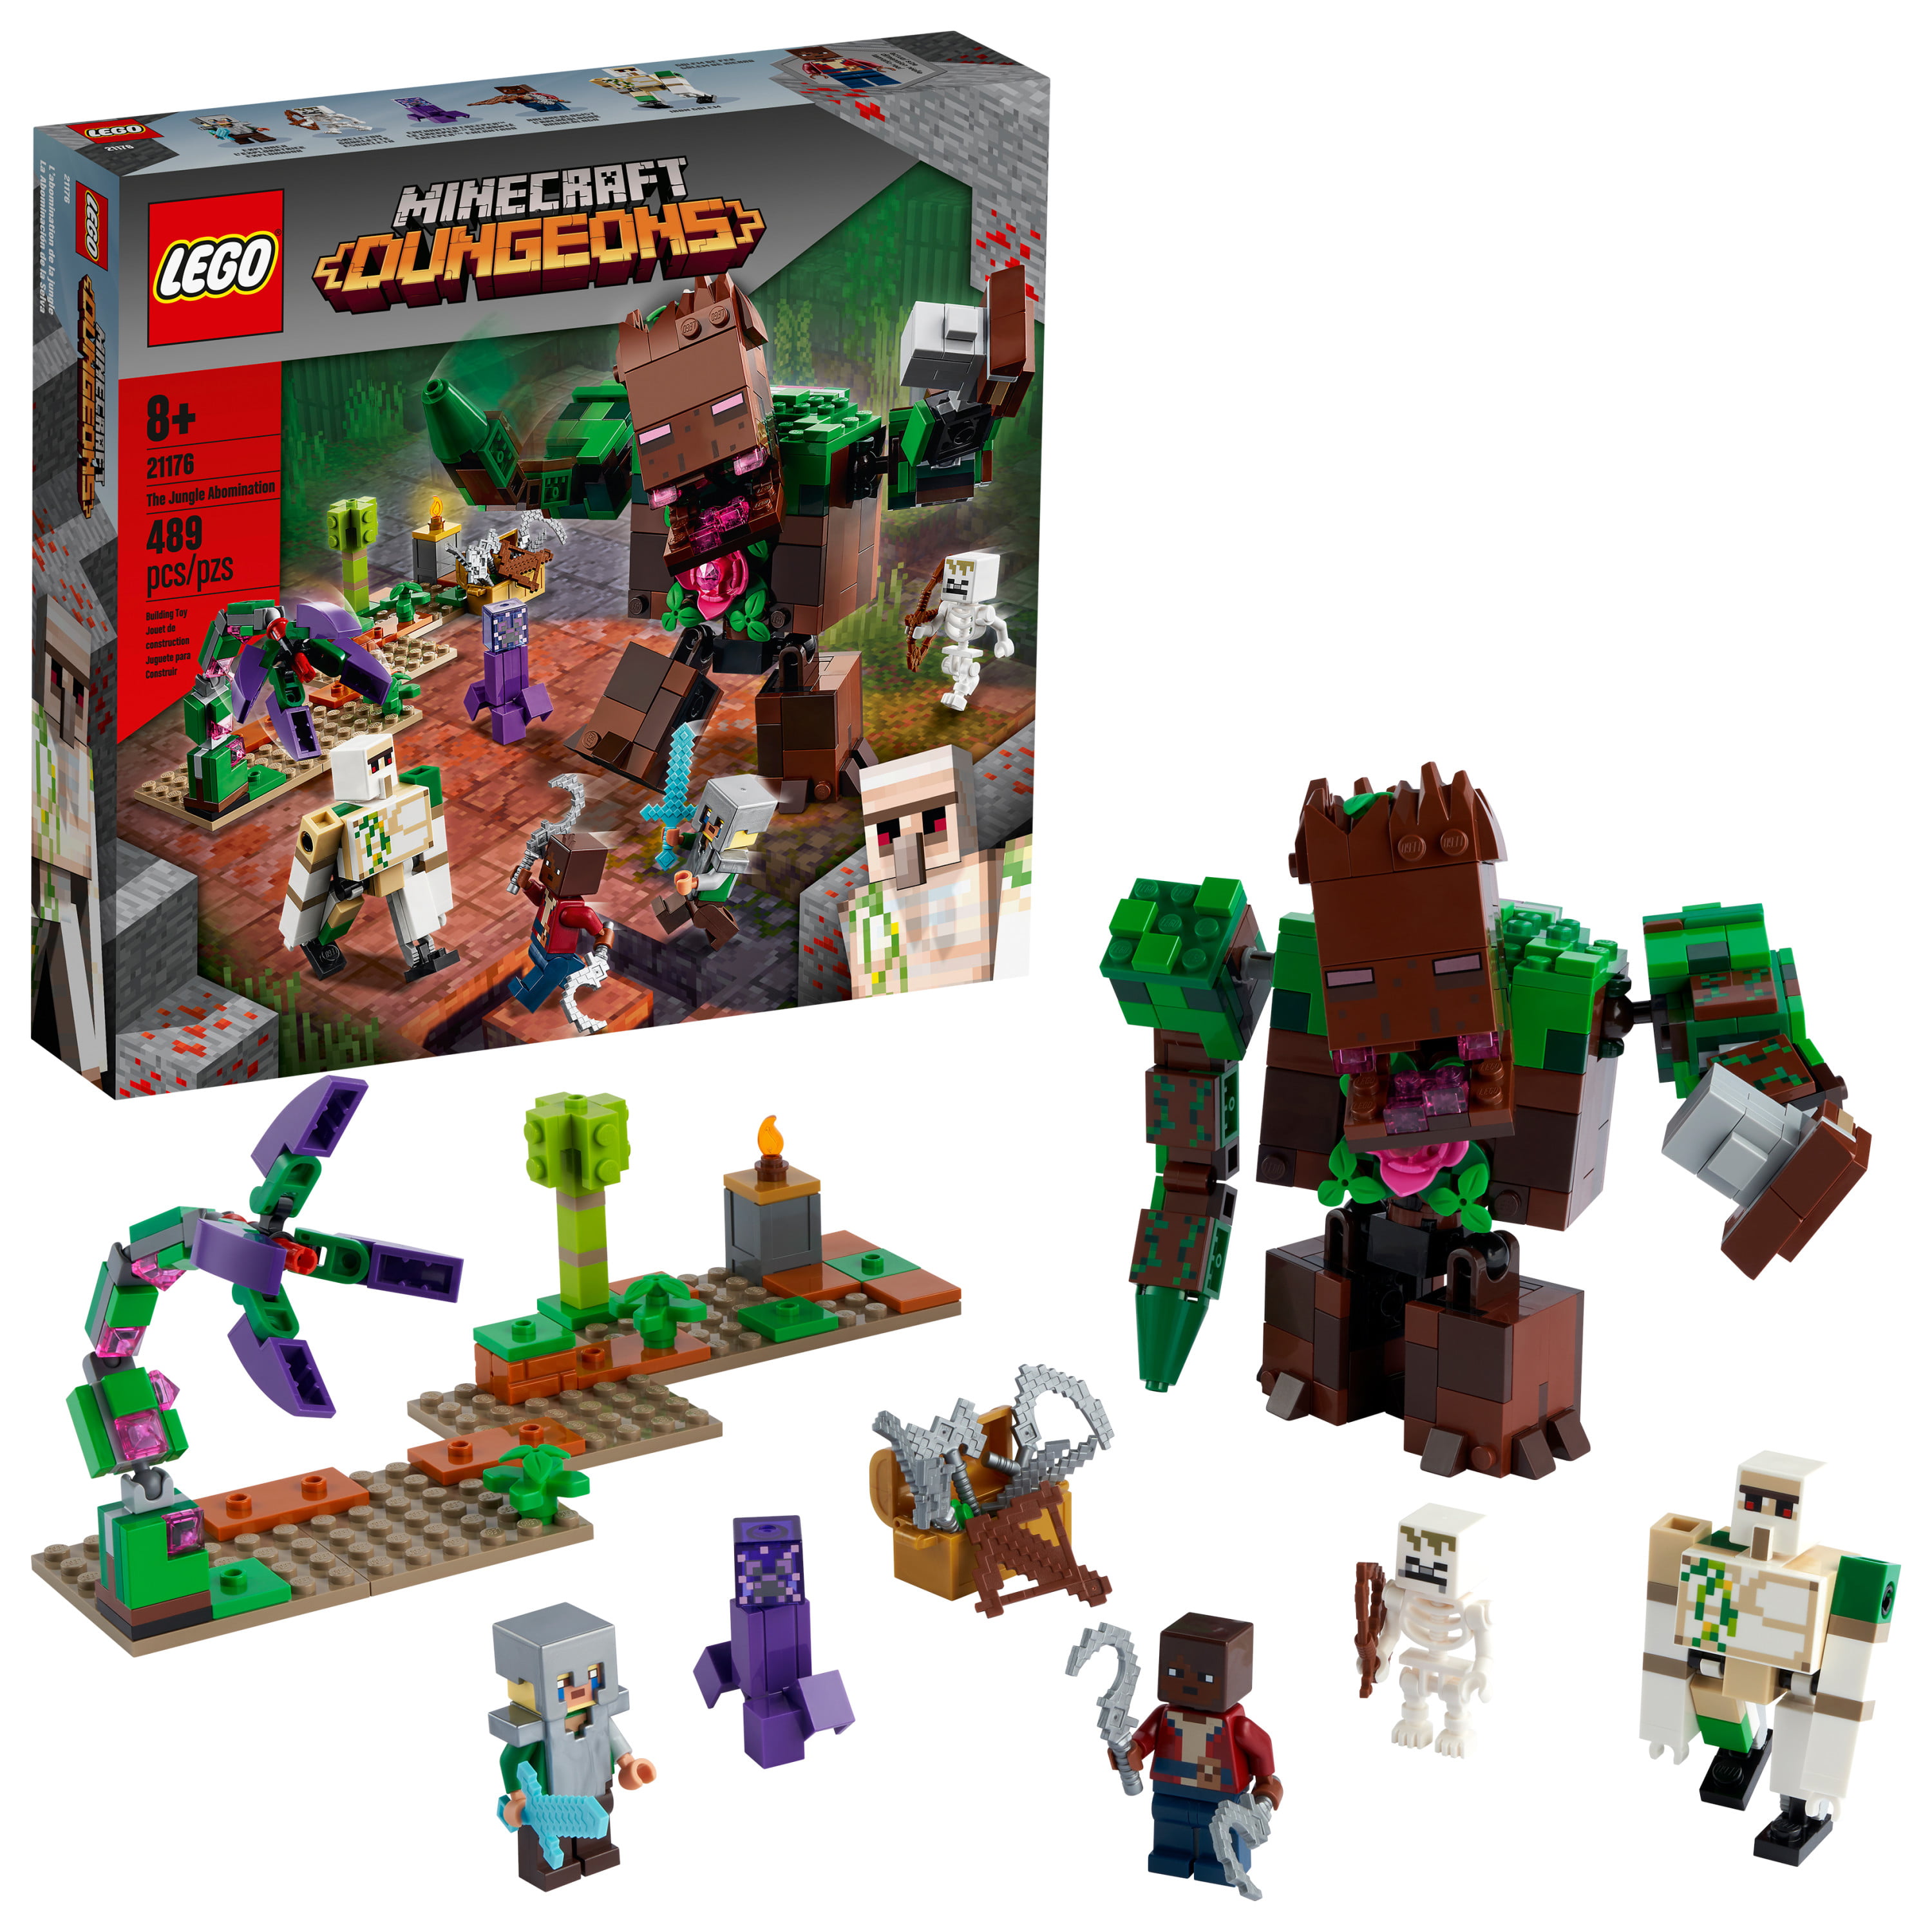 LEGO Minecraft Sky Tower Set Giocattoli per Bambini di 8 Anni con Minifigure del Pilota e Tanti Accessori Autentici 21173 